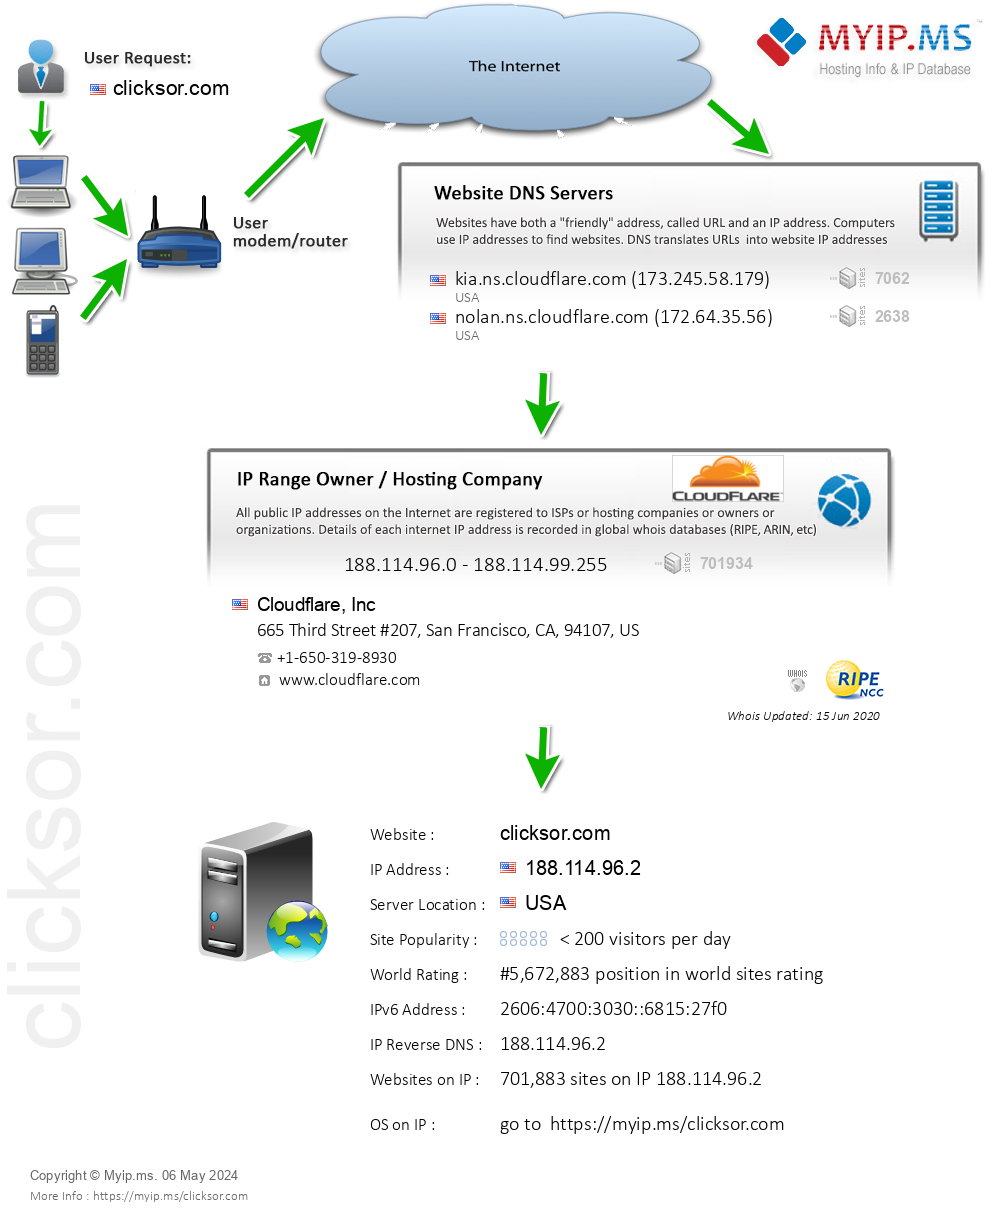 Clicksor.com - Website Hosting Visual IP Diagram